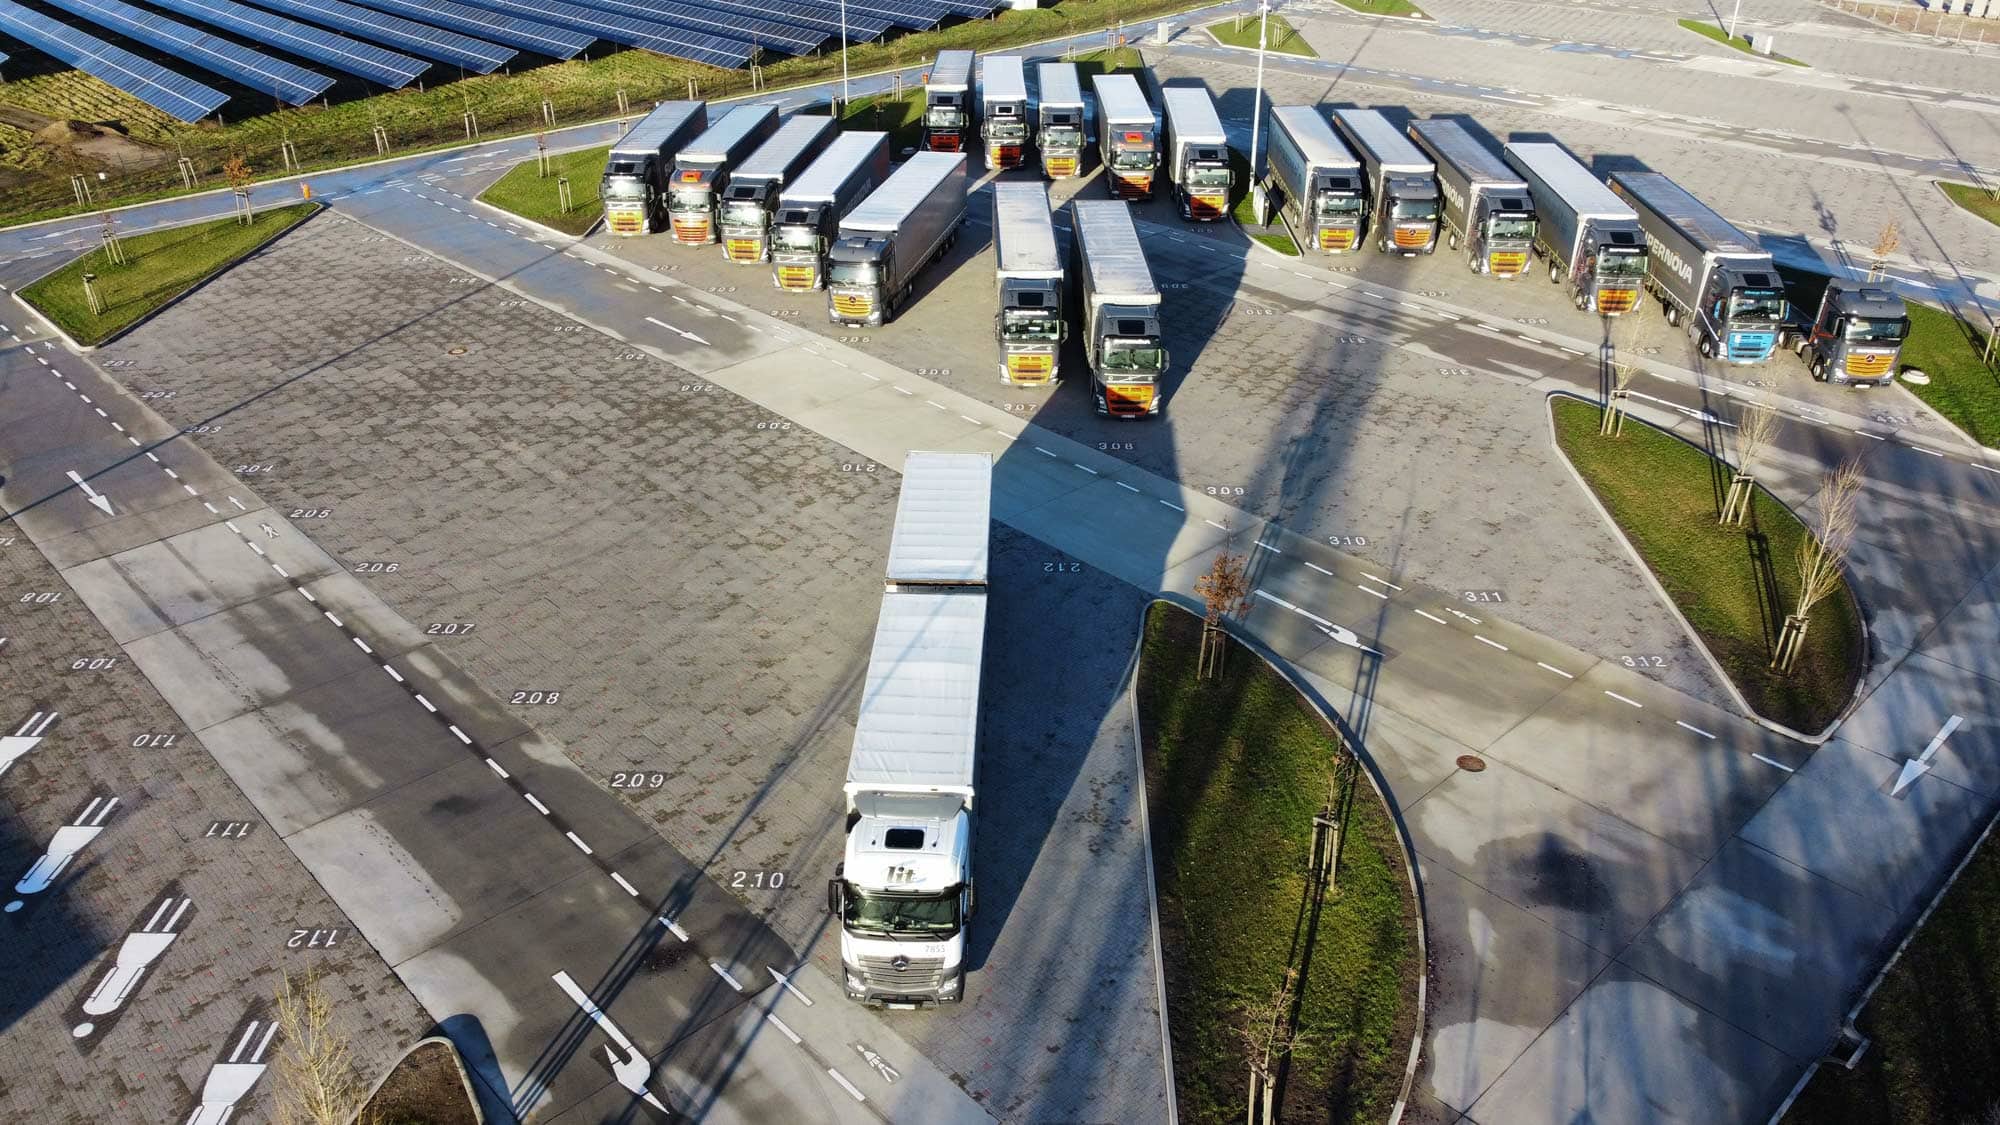 Hlídané parkoviště pro nákladní automobily A9 / Dlouhodobé parkování